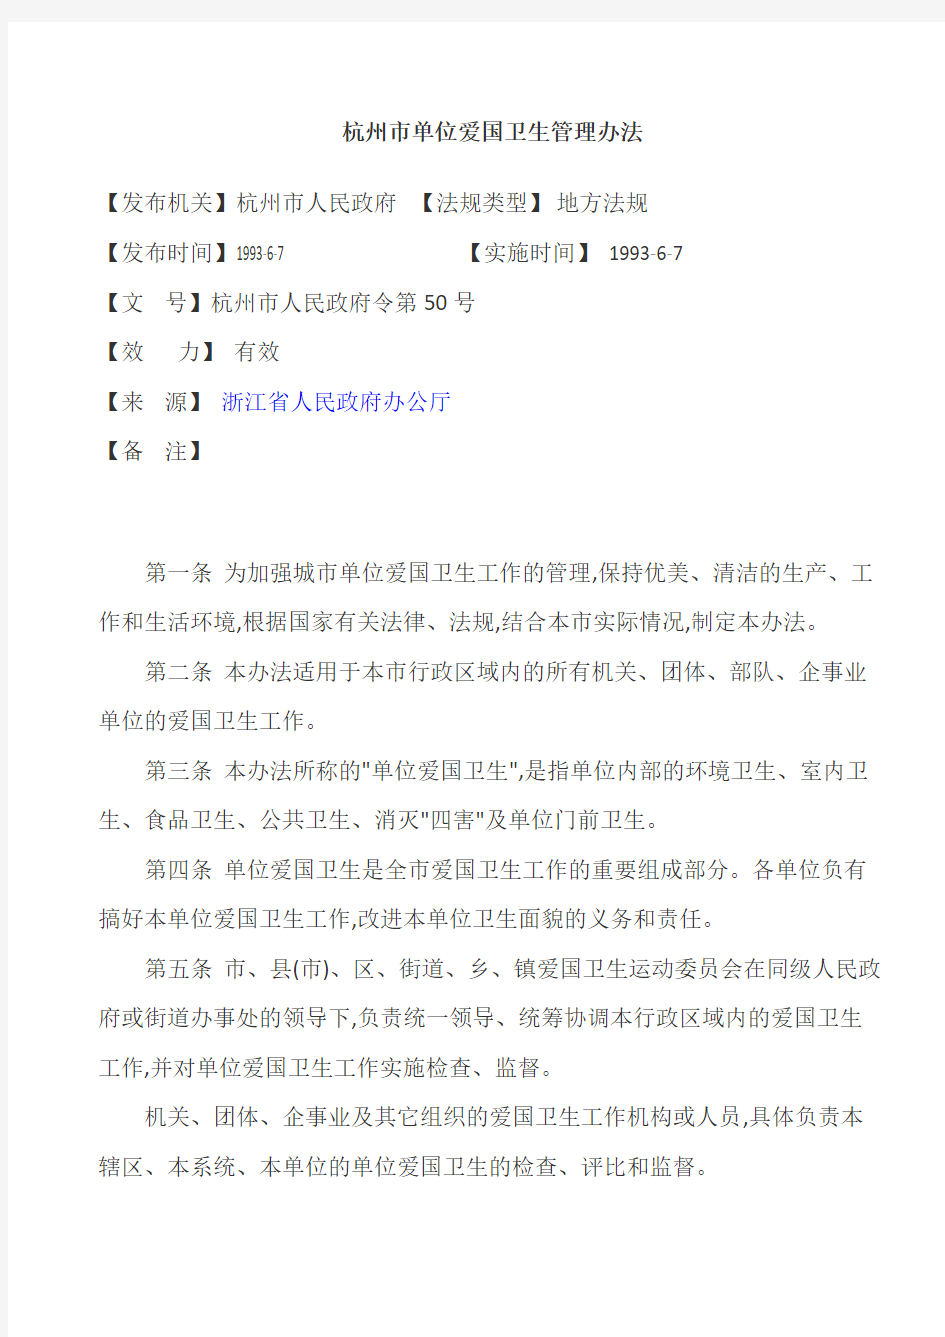 杭州市单位爱国卫生管理办法